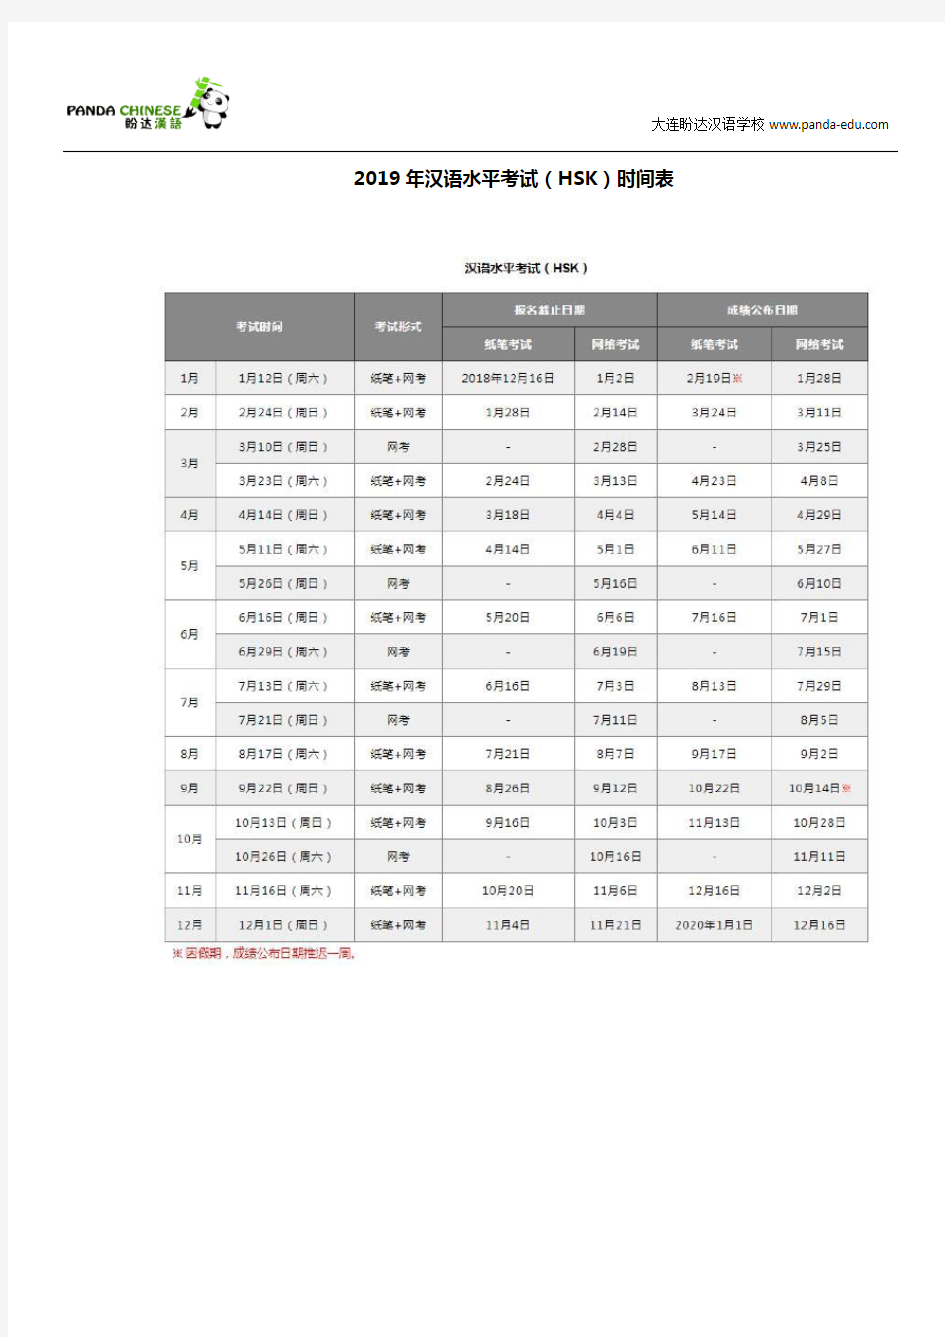 2019年汉语水平考试(HSK)时间表